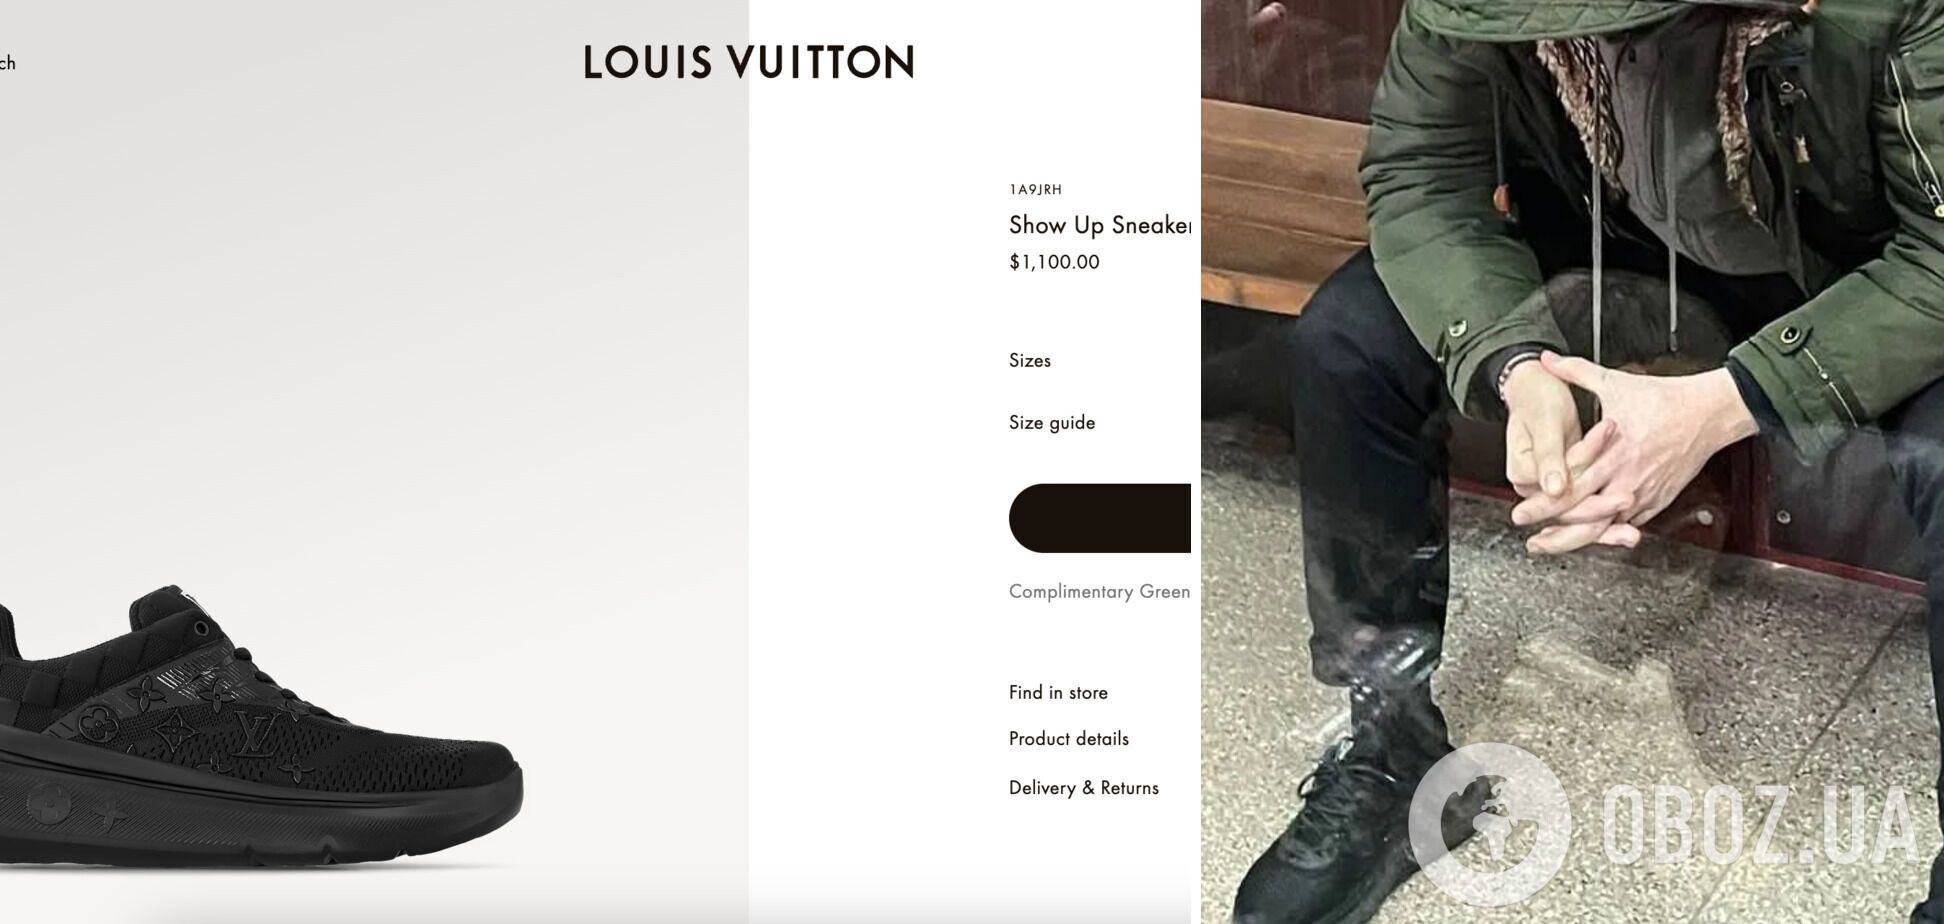 Сын Гринкевича, обвиняемого в некачественных закупках для ВСУ, засветил кроссовки Louis Vuitton стоимостью около 1000 евро